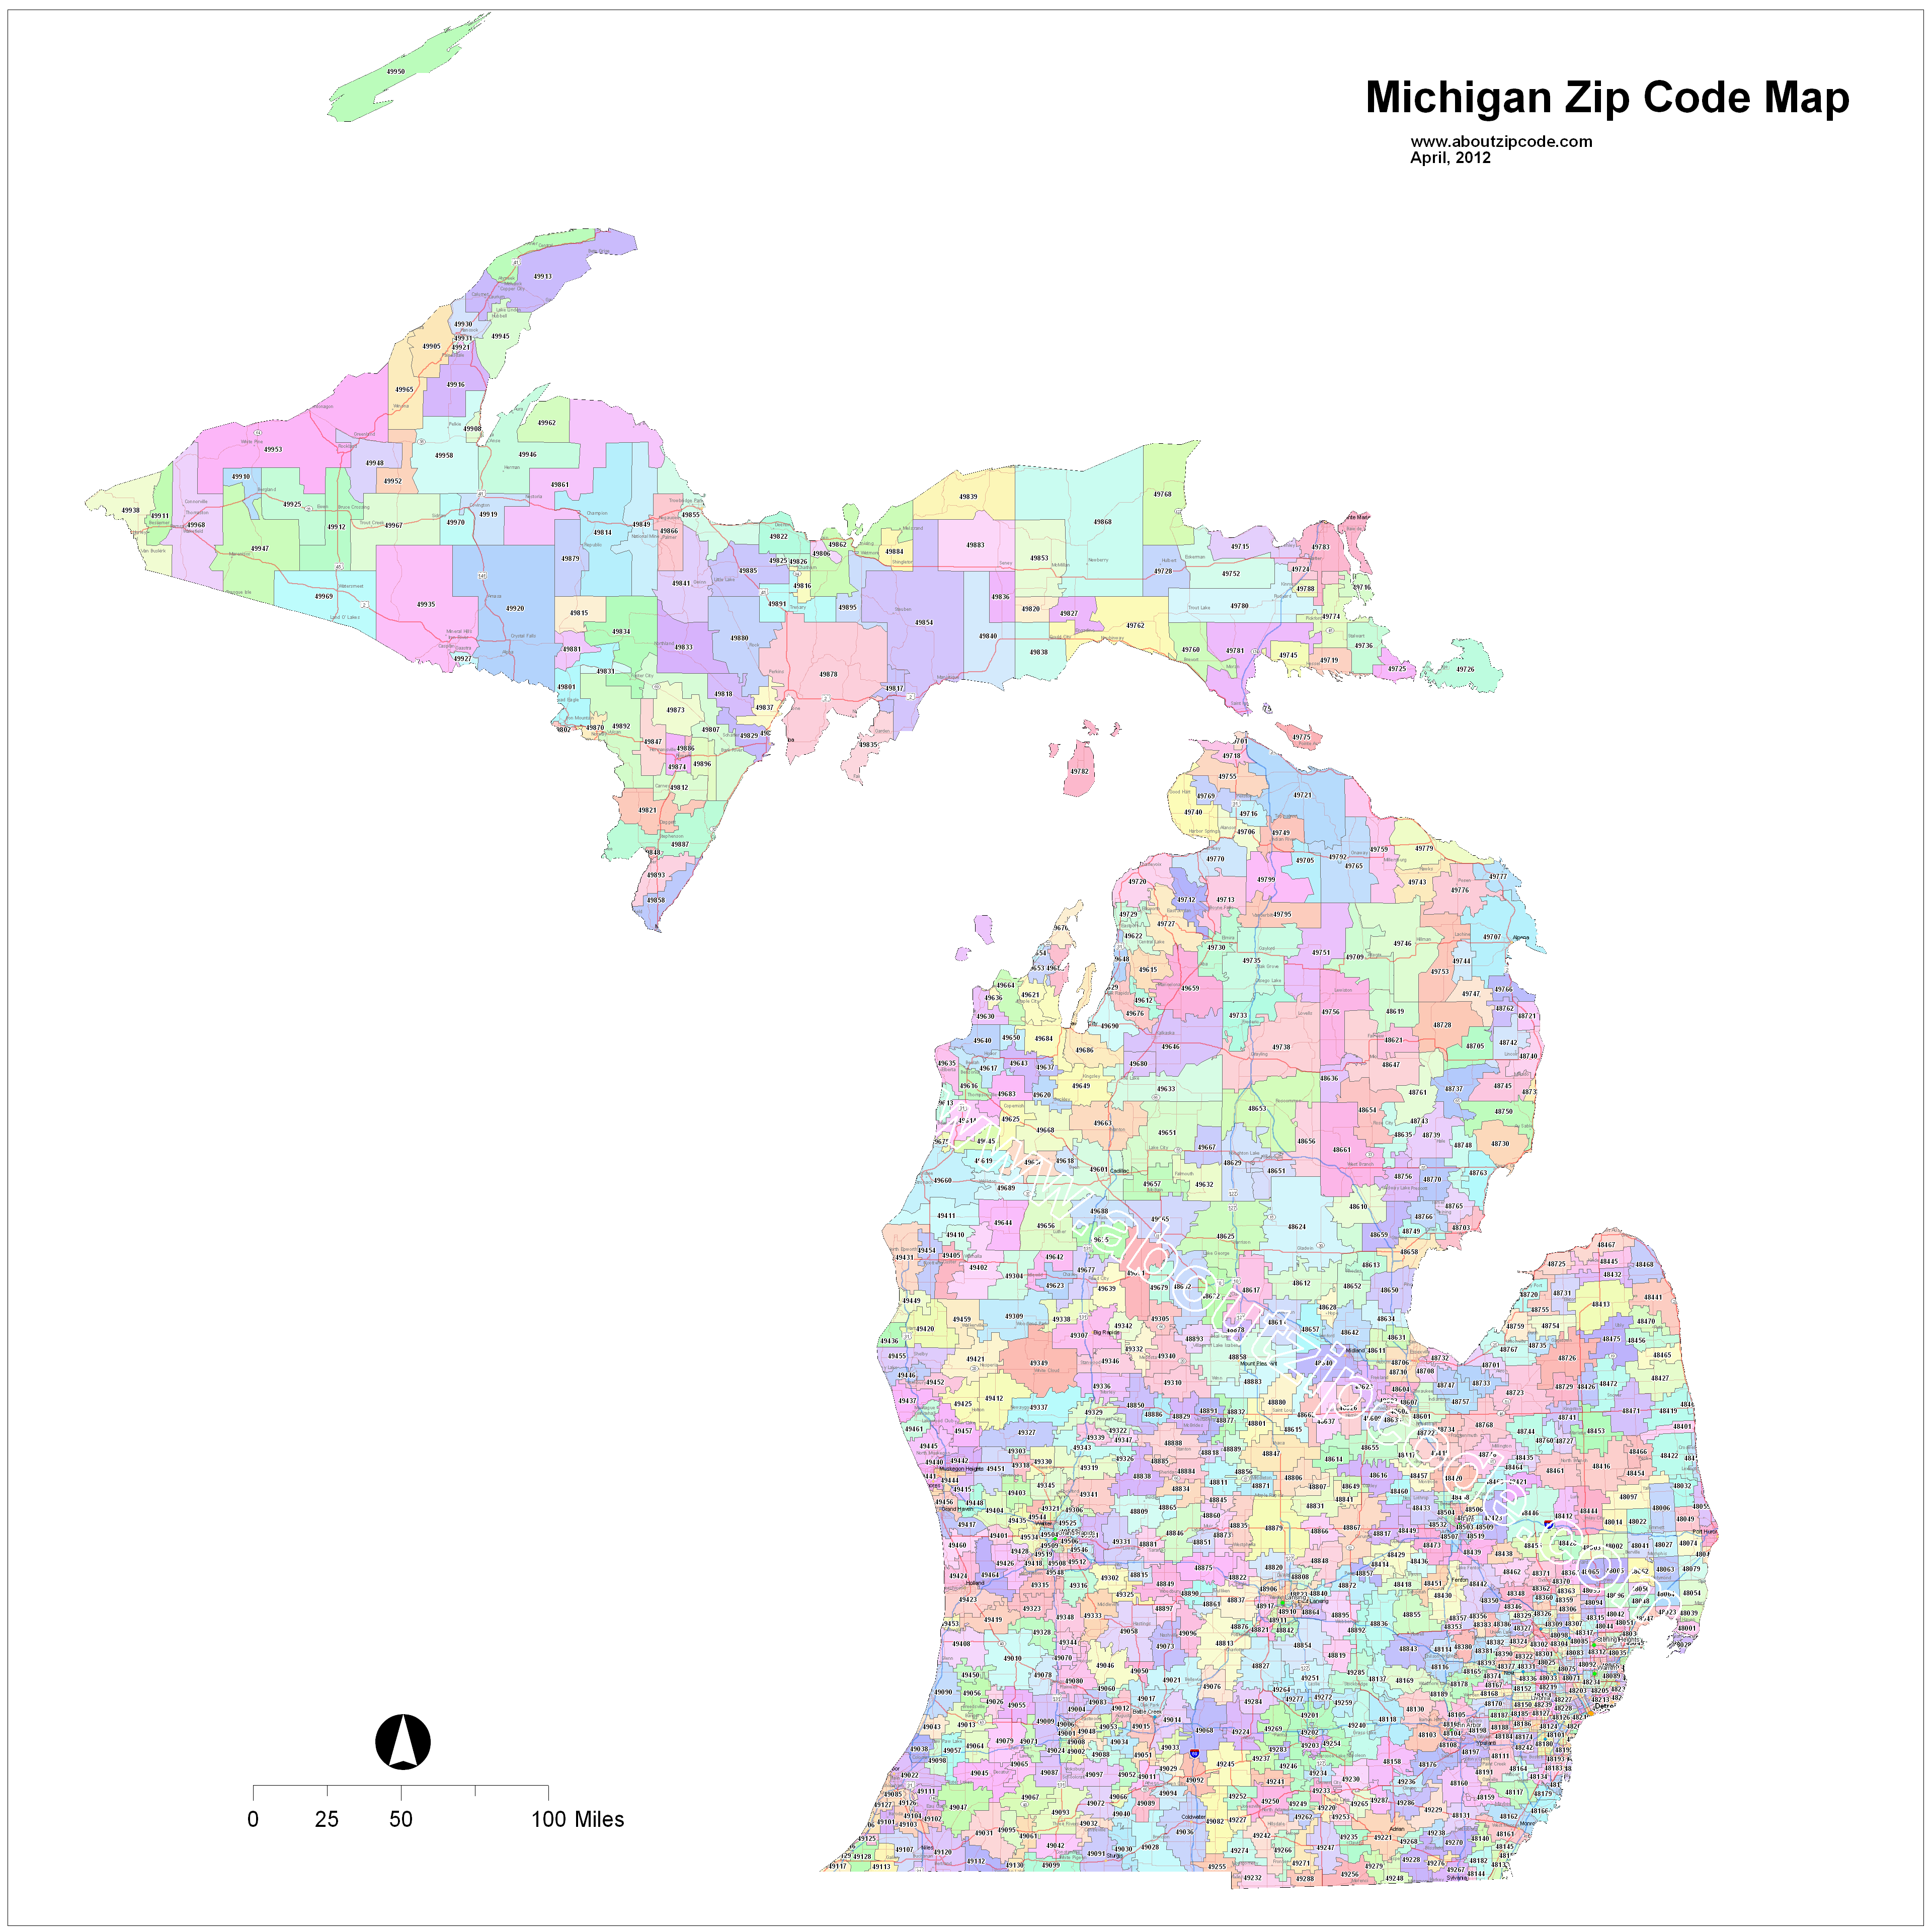 pontiac michigan zip code map Michigan Zip Code Maps Free Michigan Zip Code Maps pontiac michigan zip code map